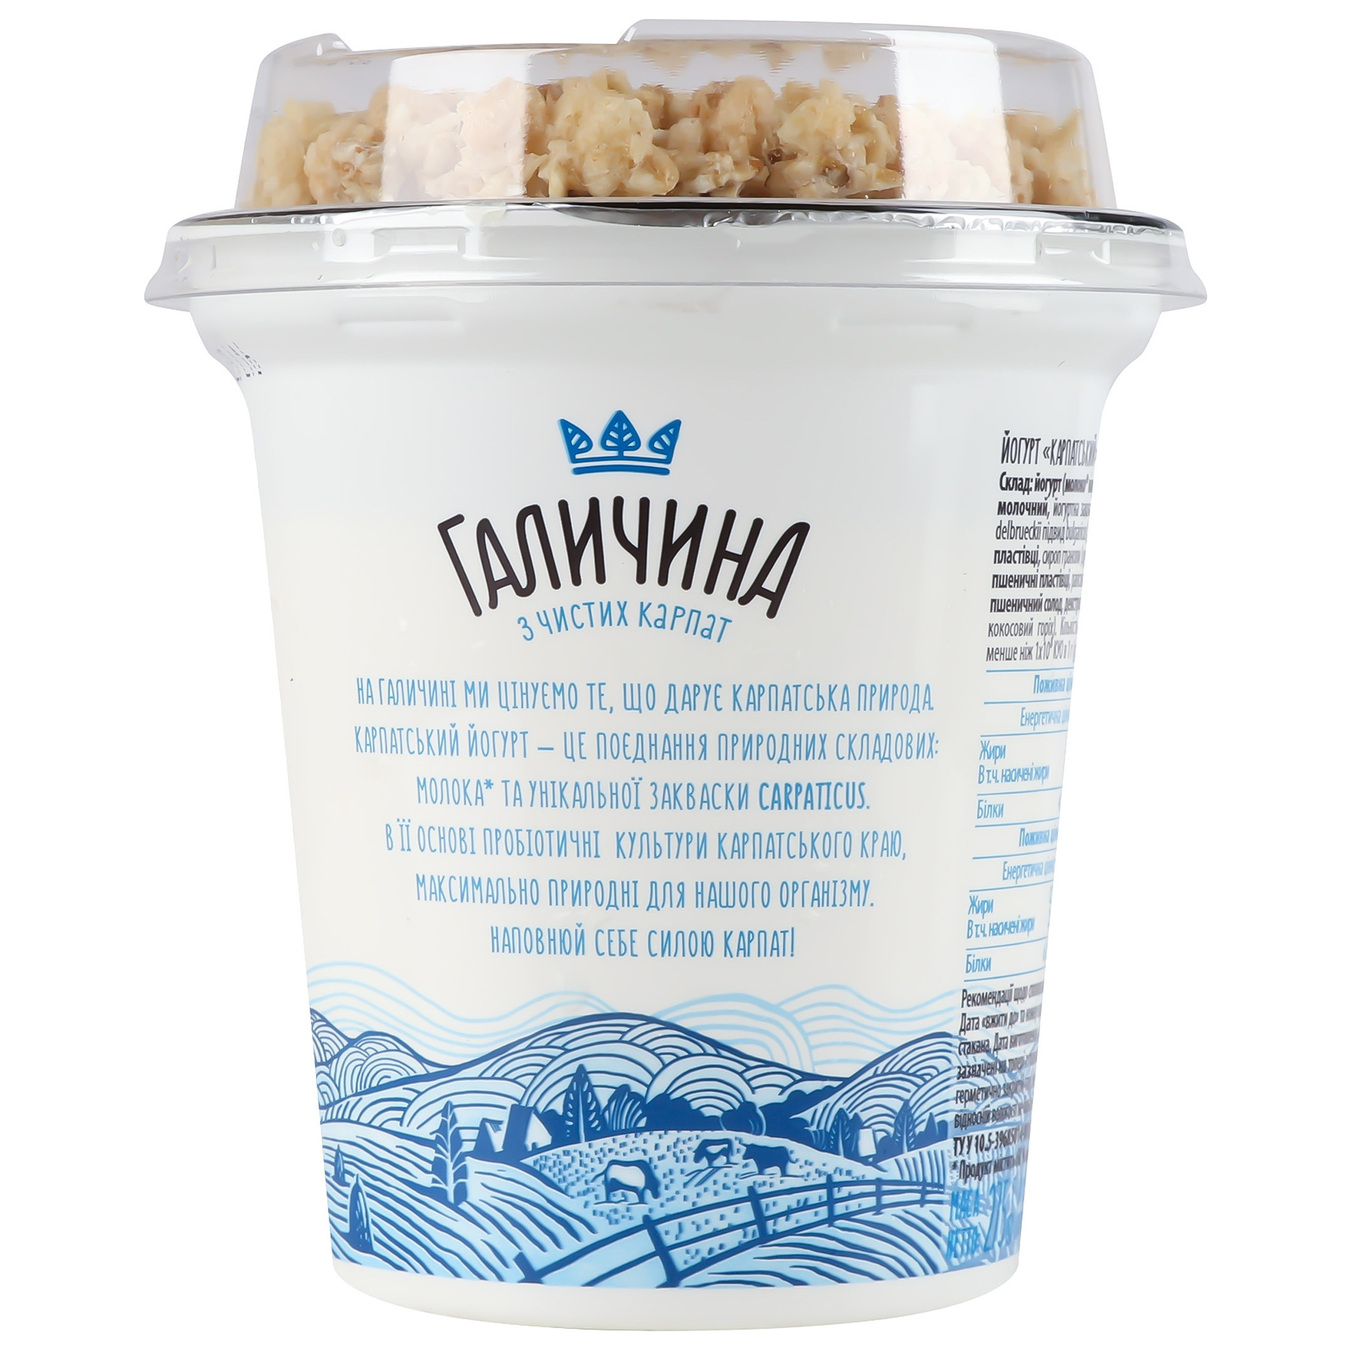 Galychyna Carpathian Sugar-Free Granola Flavored Yogurt 3% 275g 3